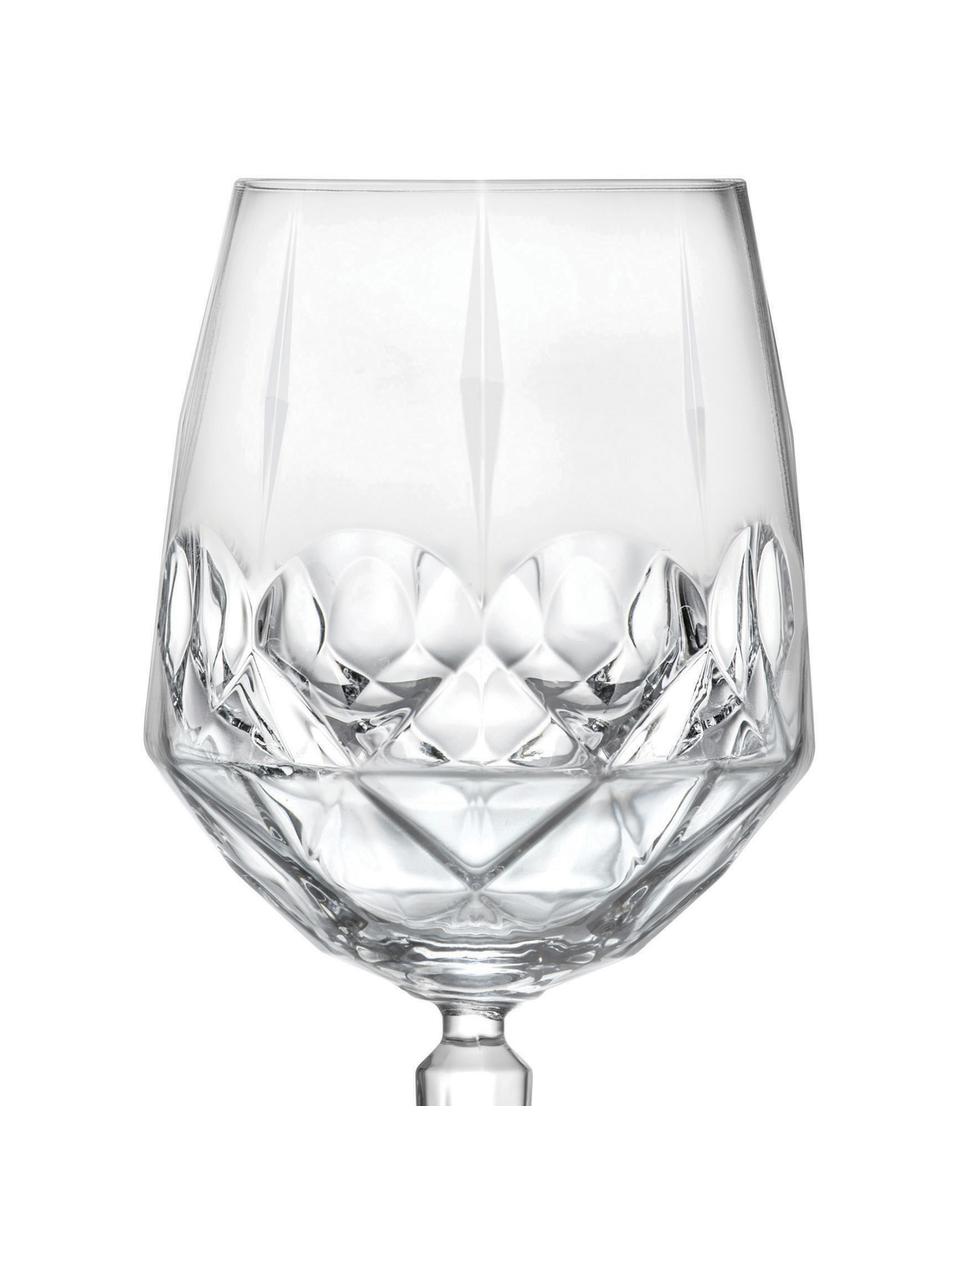 Kristallen witte wijnglazen Calicia met reliëf, 6 stuks, Luxion kristalglas, Transparant, Ø 10 x H 24 cm